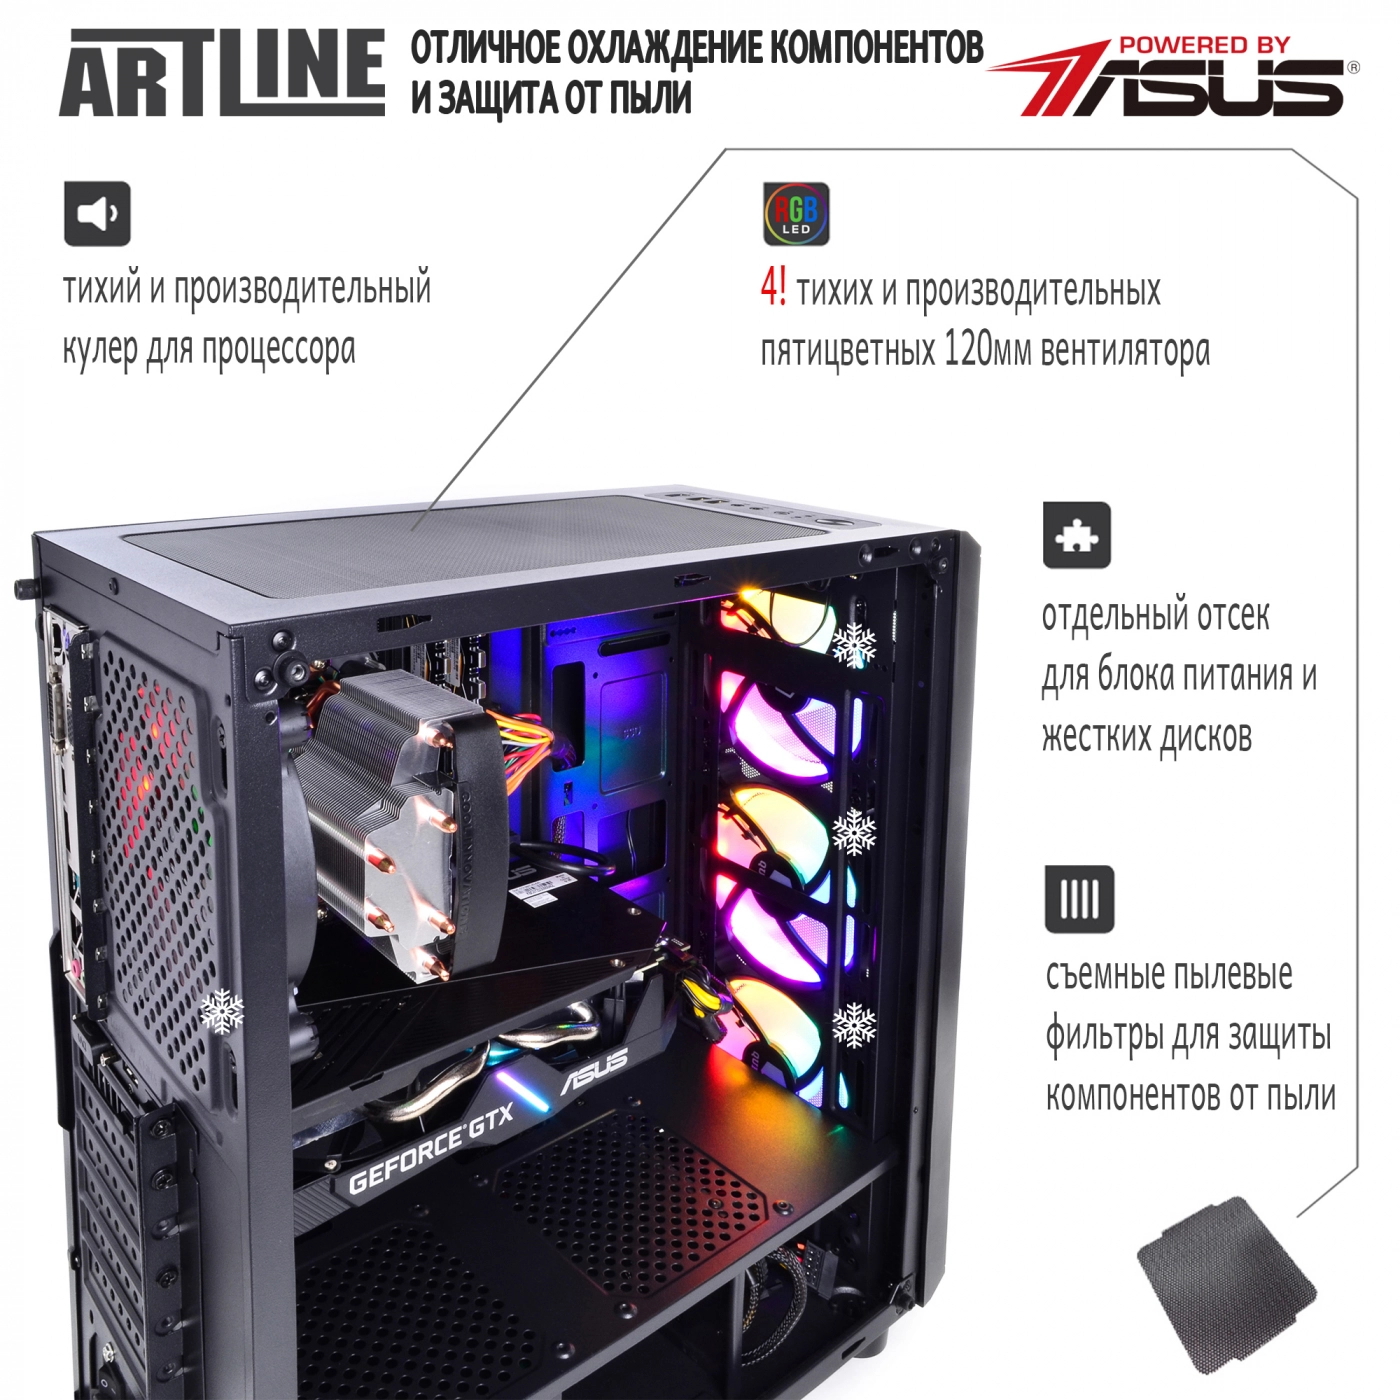 Купить Компьютер ARTLINE Gaming X55v19 - фото 3